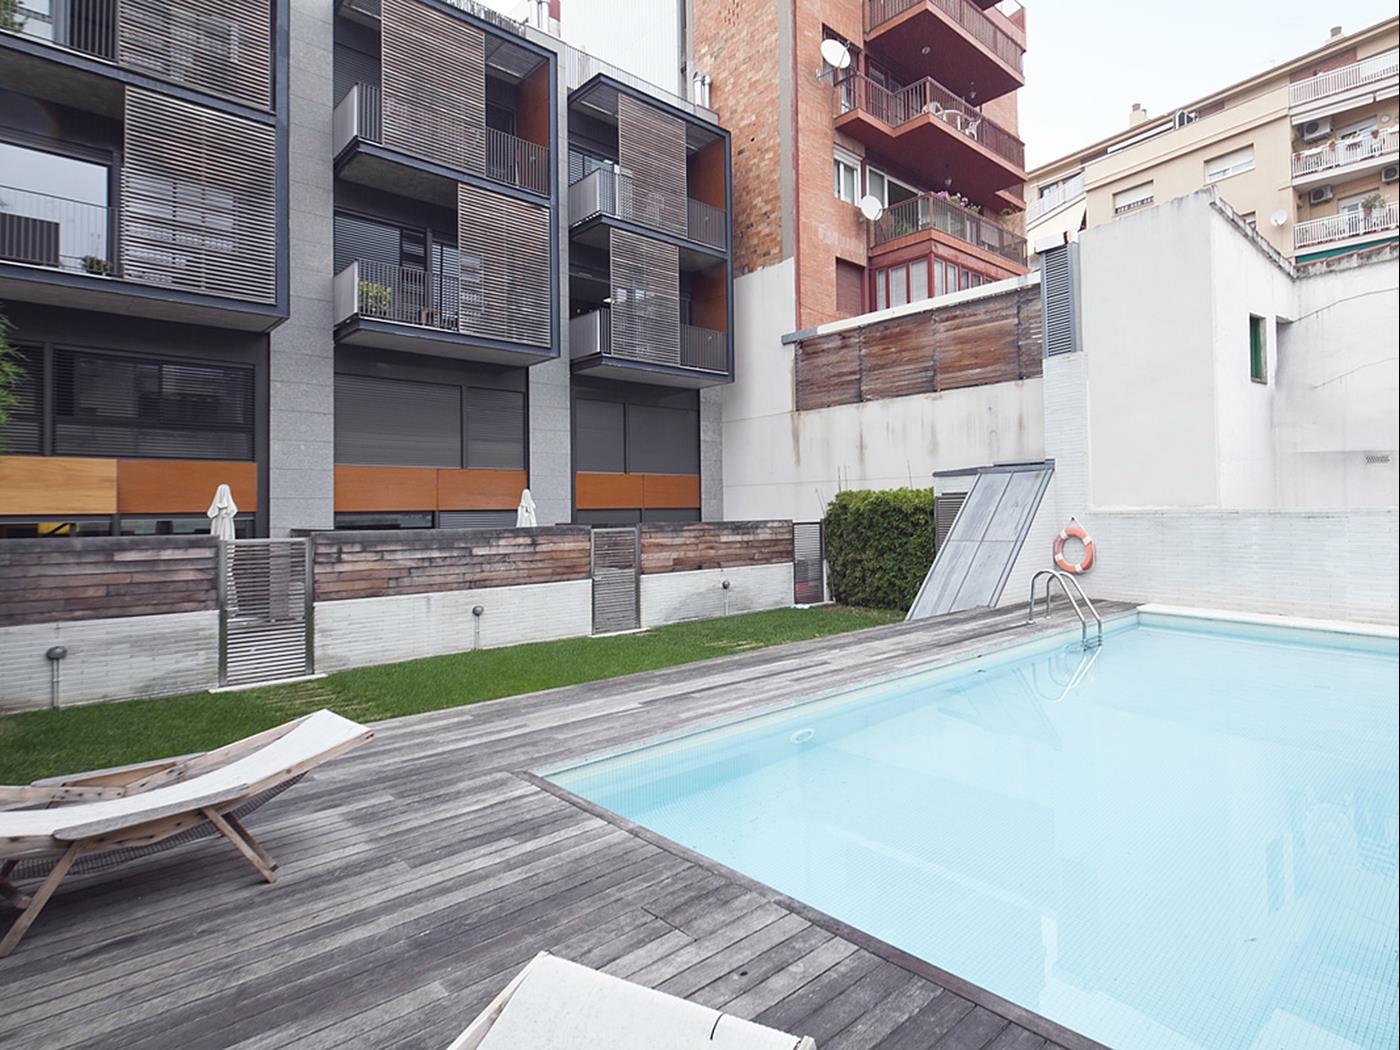 غراسيا شقة علوية مع تراس وحمام سباحة - My Space Barcelona شقة